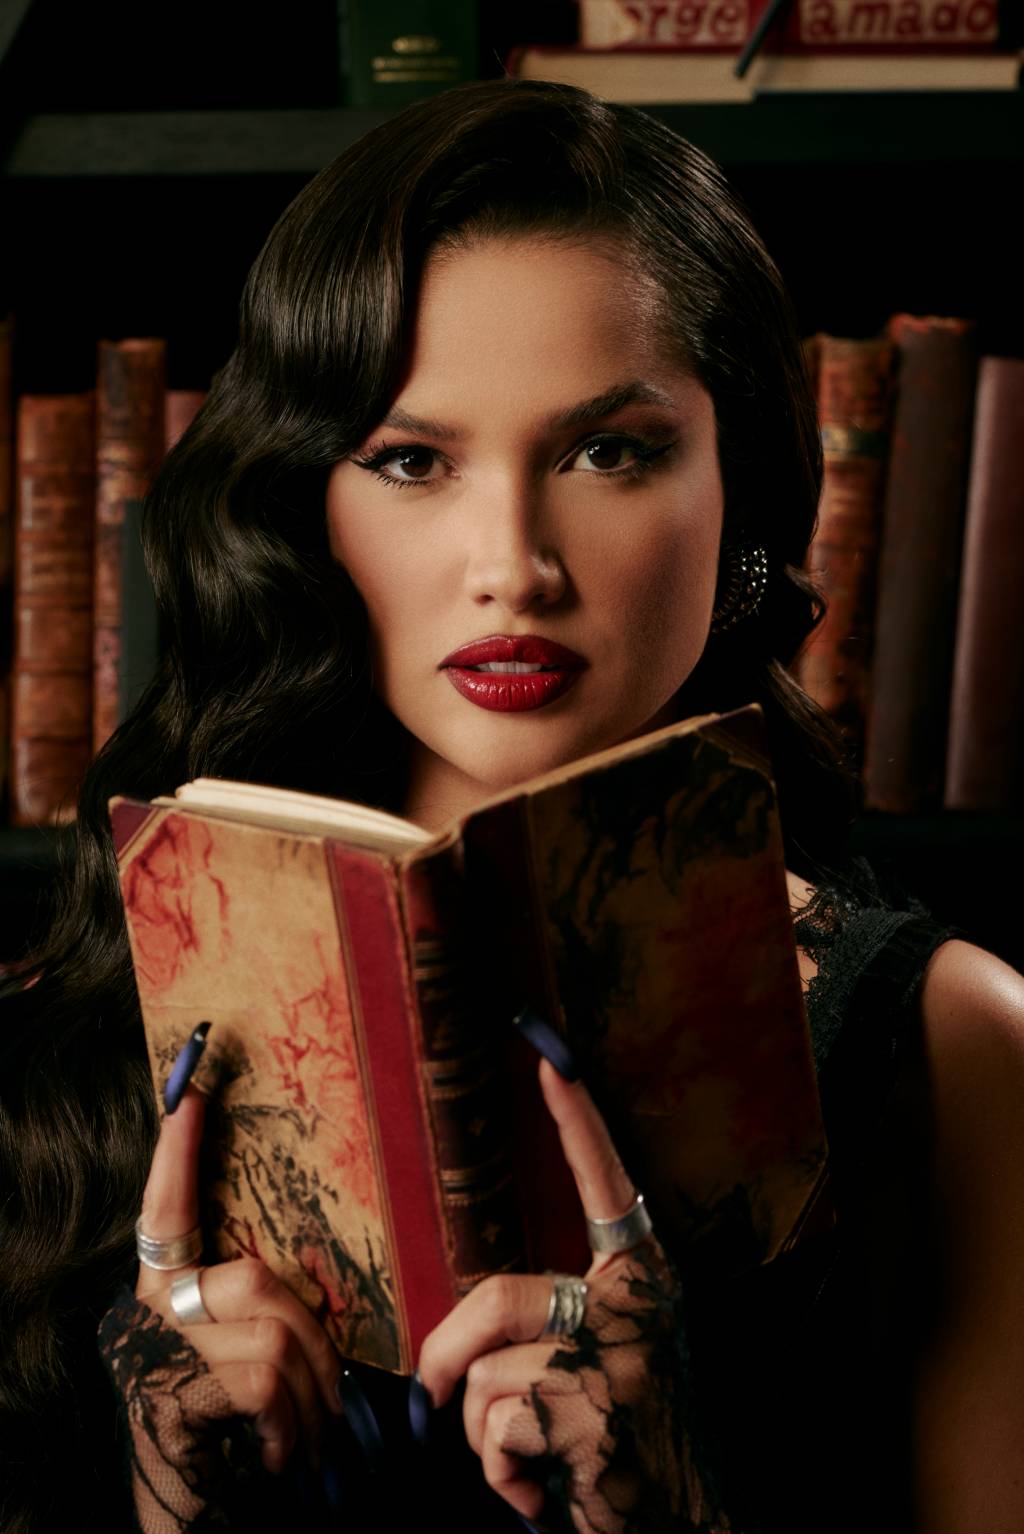 Mulher branca segura livro antigo com dedos indicadores em destaque. Tem cabelos pretos levemente encaracolados e batom bem vermelho.